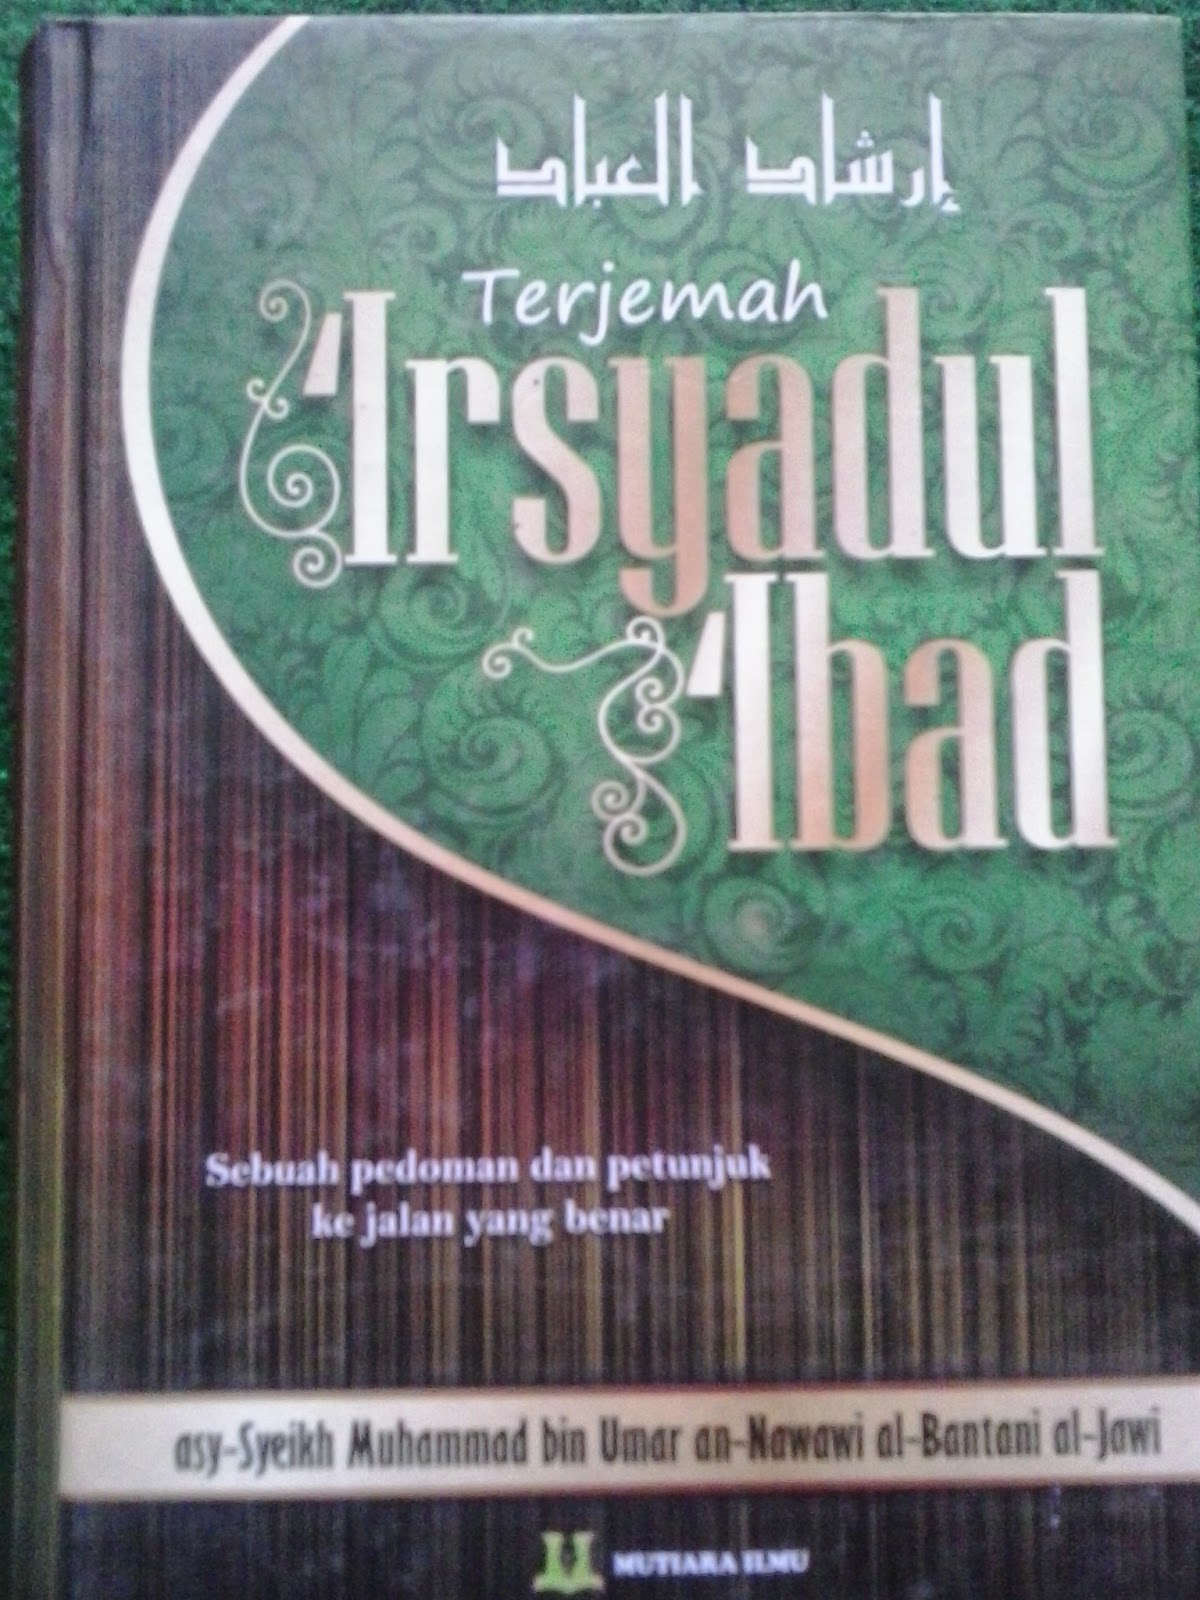 Download Terjemah Kitab Irsyadul Ibad 162l